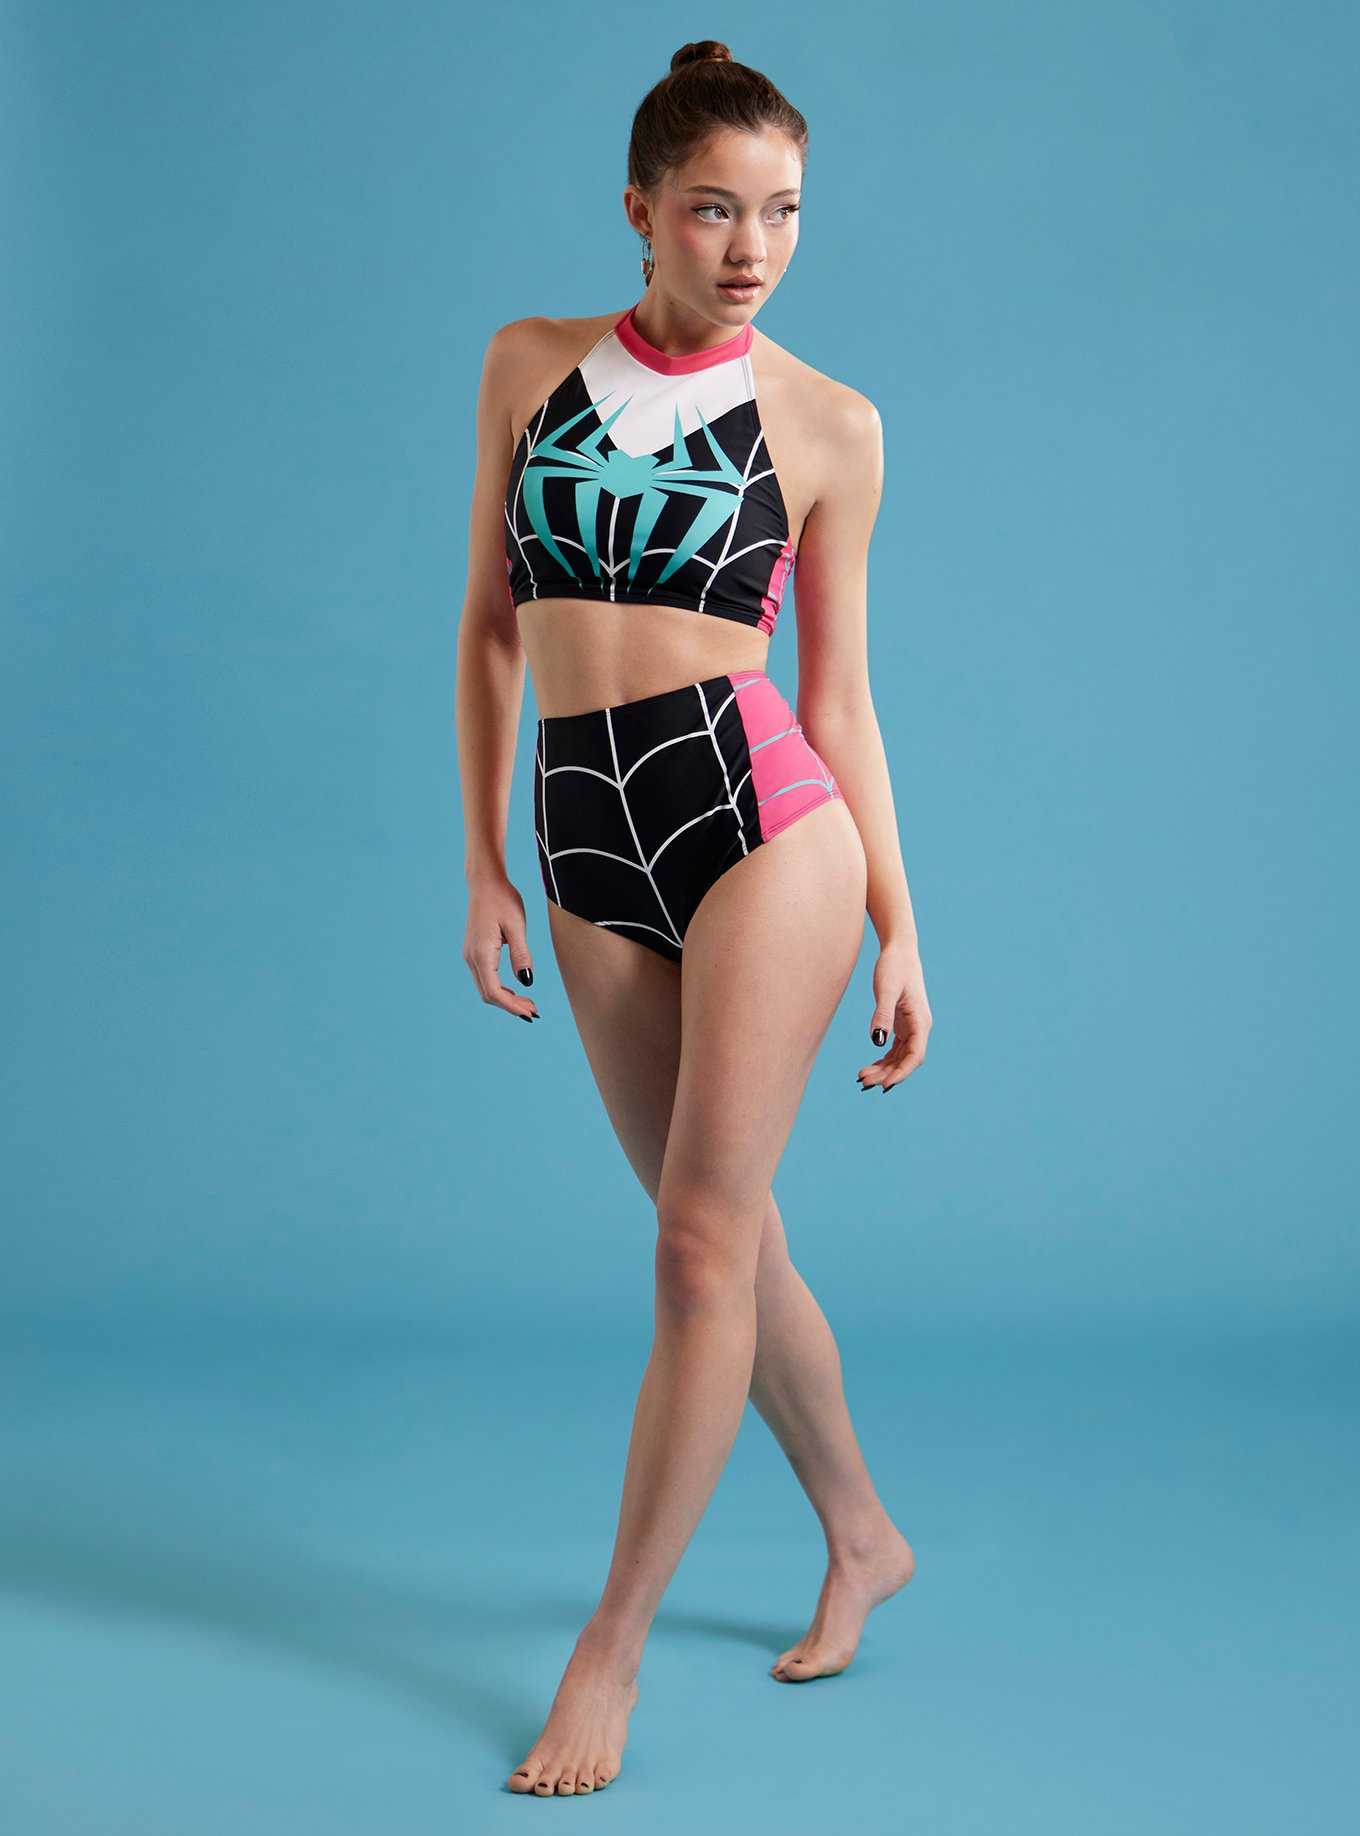 Women's Zip Pocket High Waist Bikini Tankini Bottom Swim Skirt Swimsuit,Black,S  